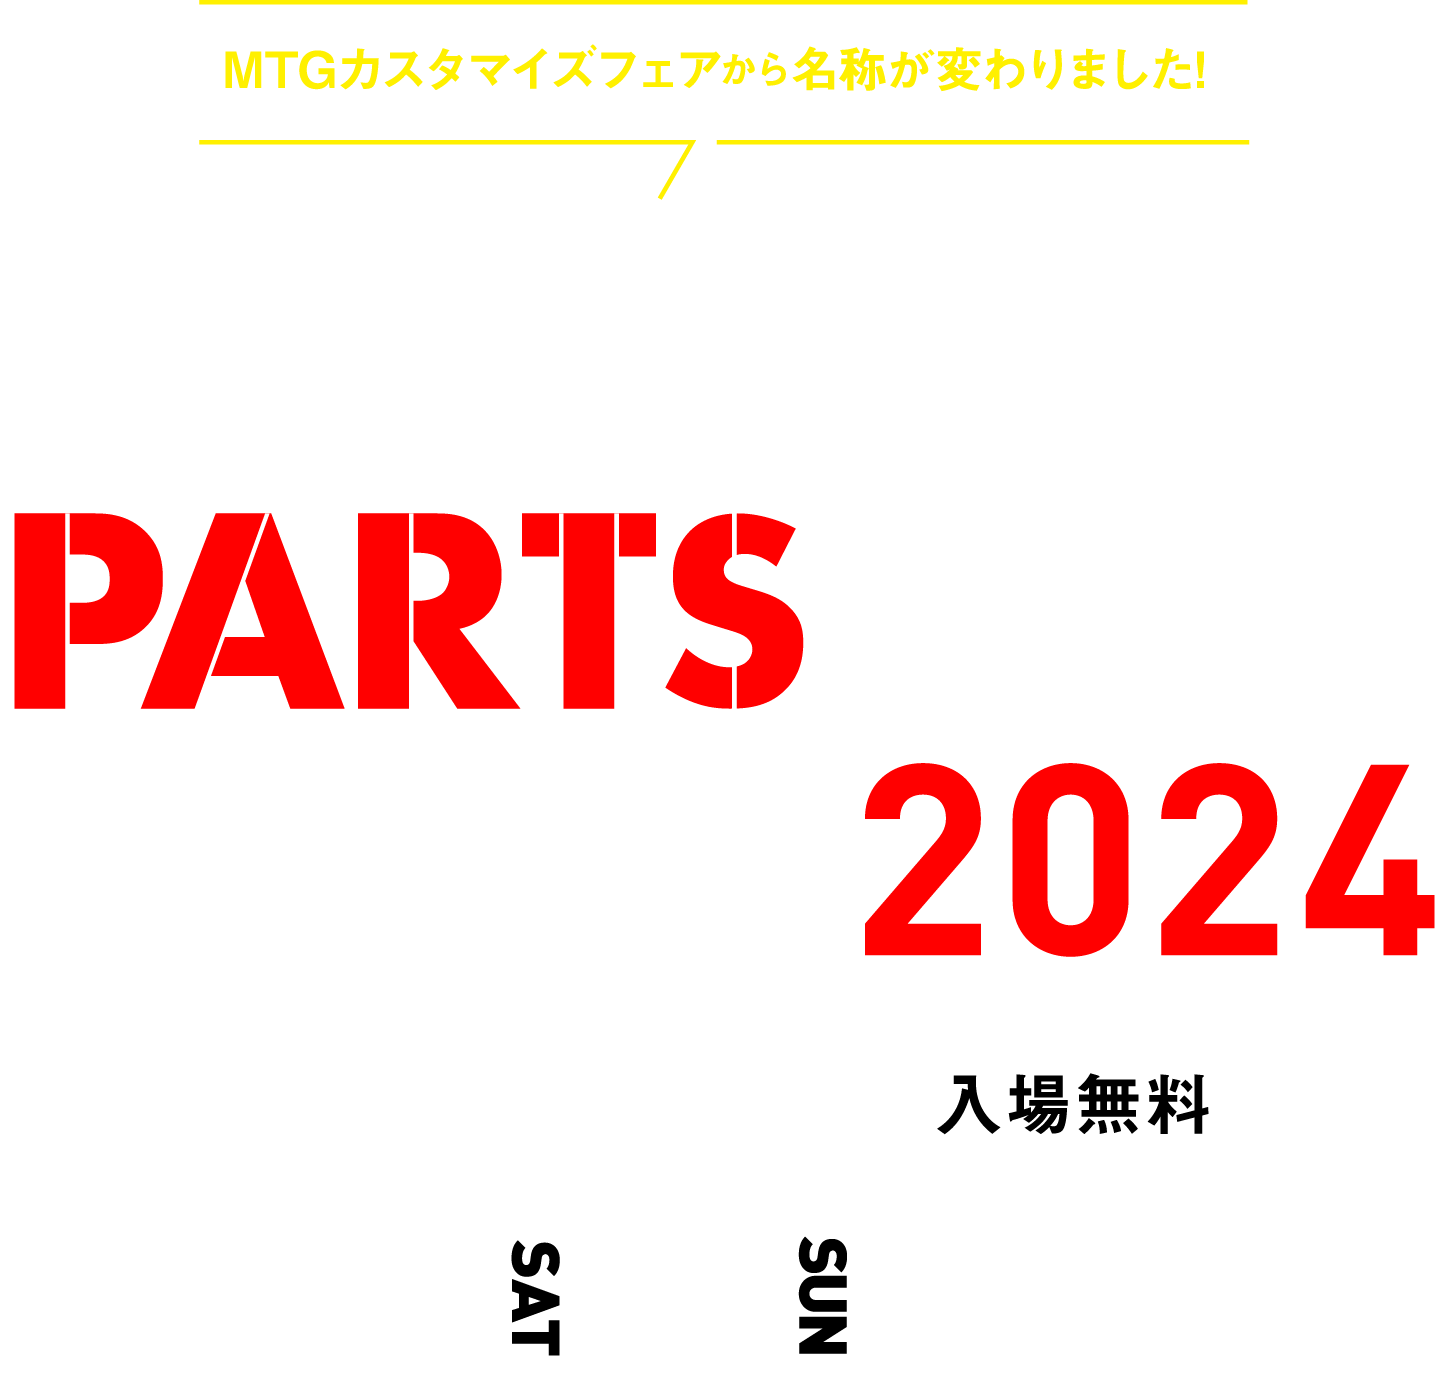 MTG PARTS FAIR 2024